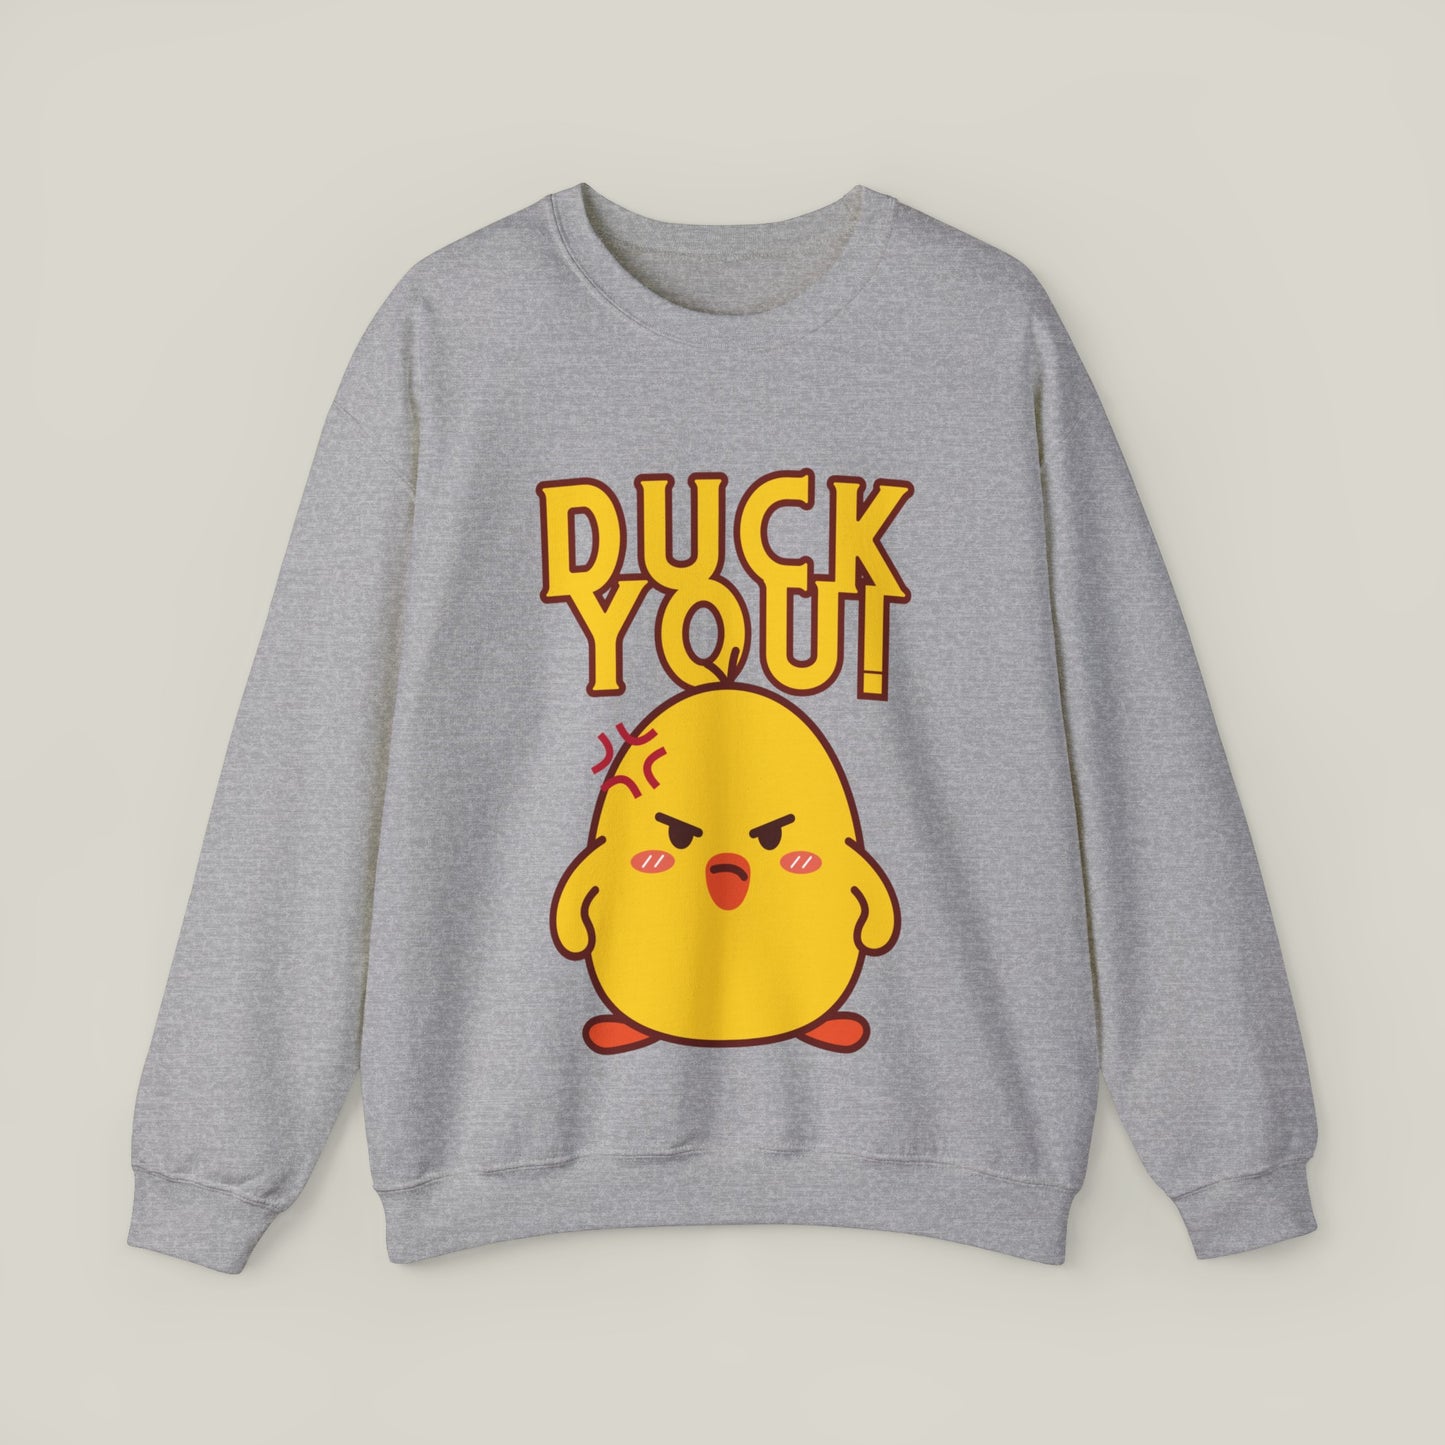 Duck You - Sweatshirt Unisex